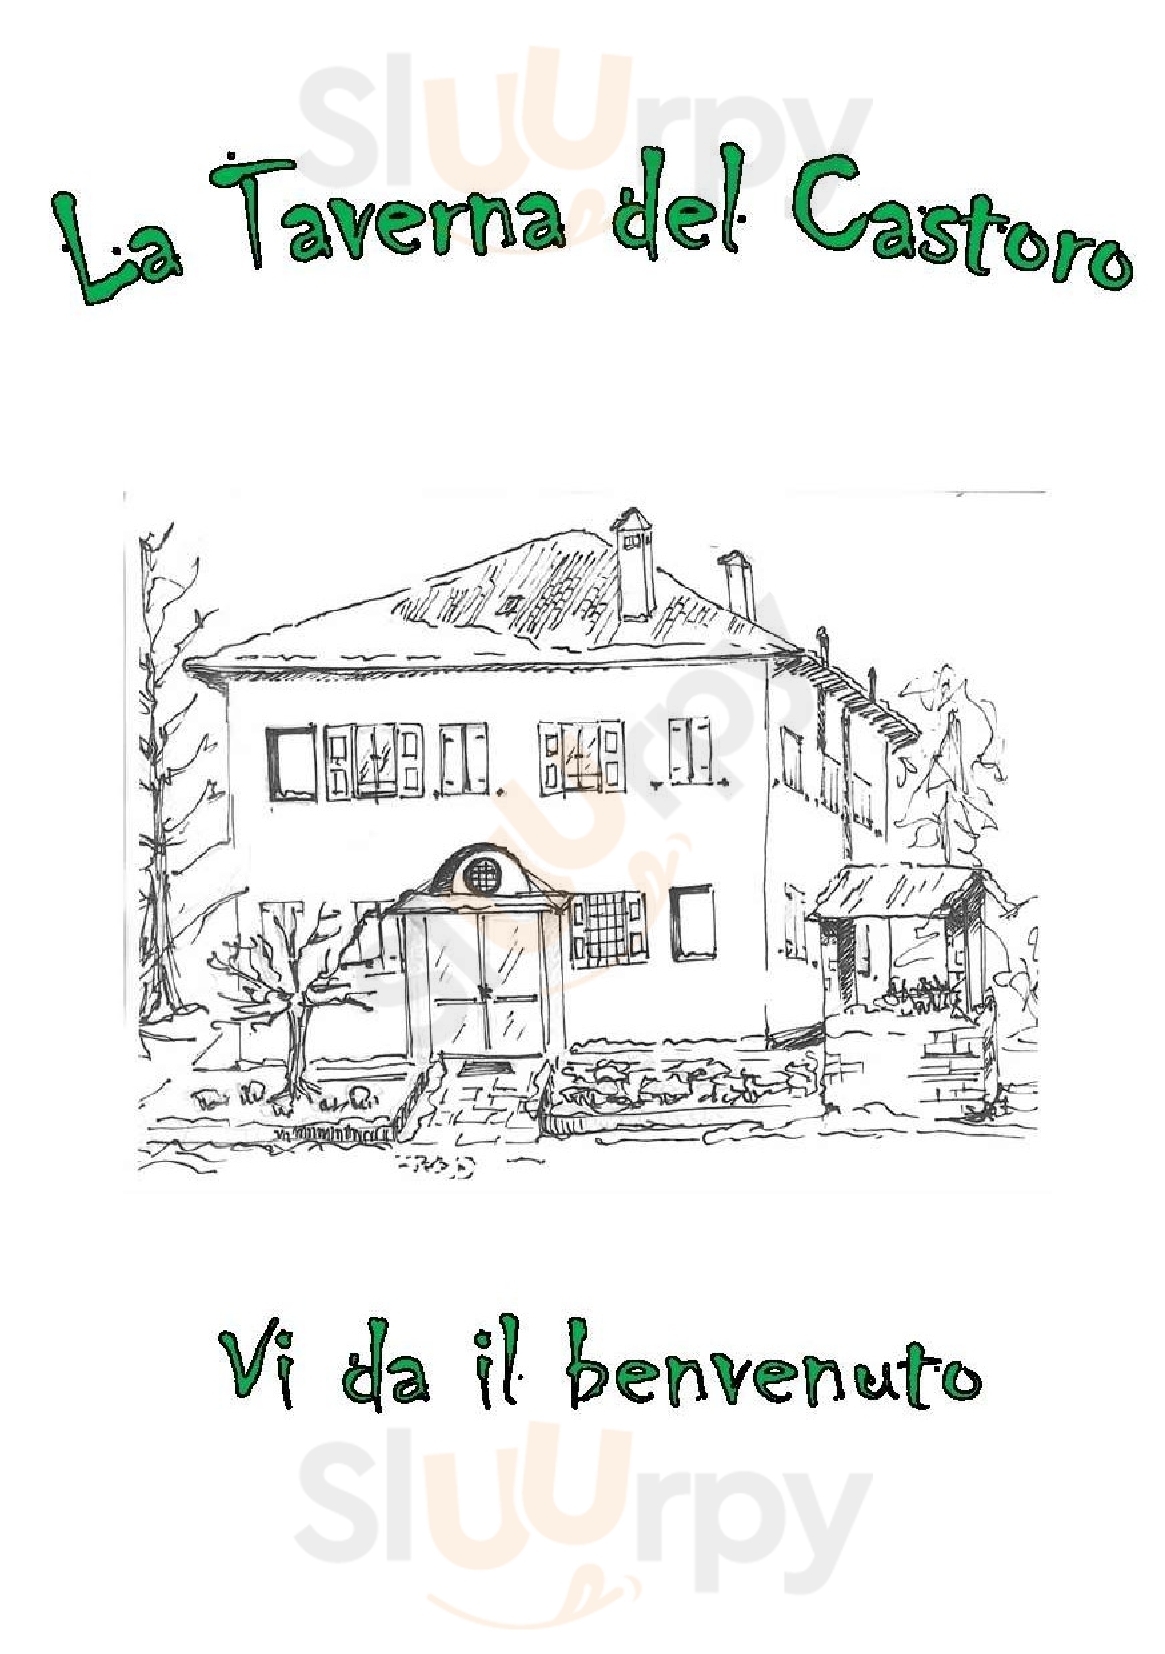 La Taverna del Castoro Bologna menù 1 pagina